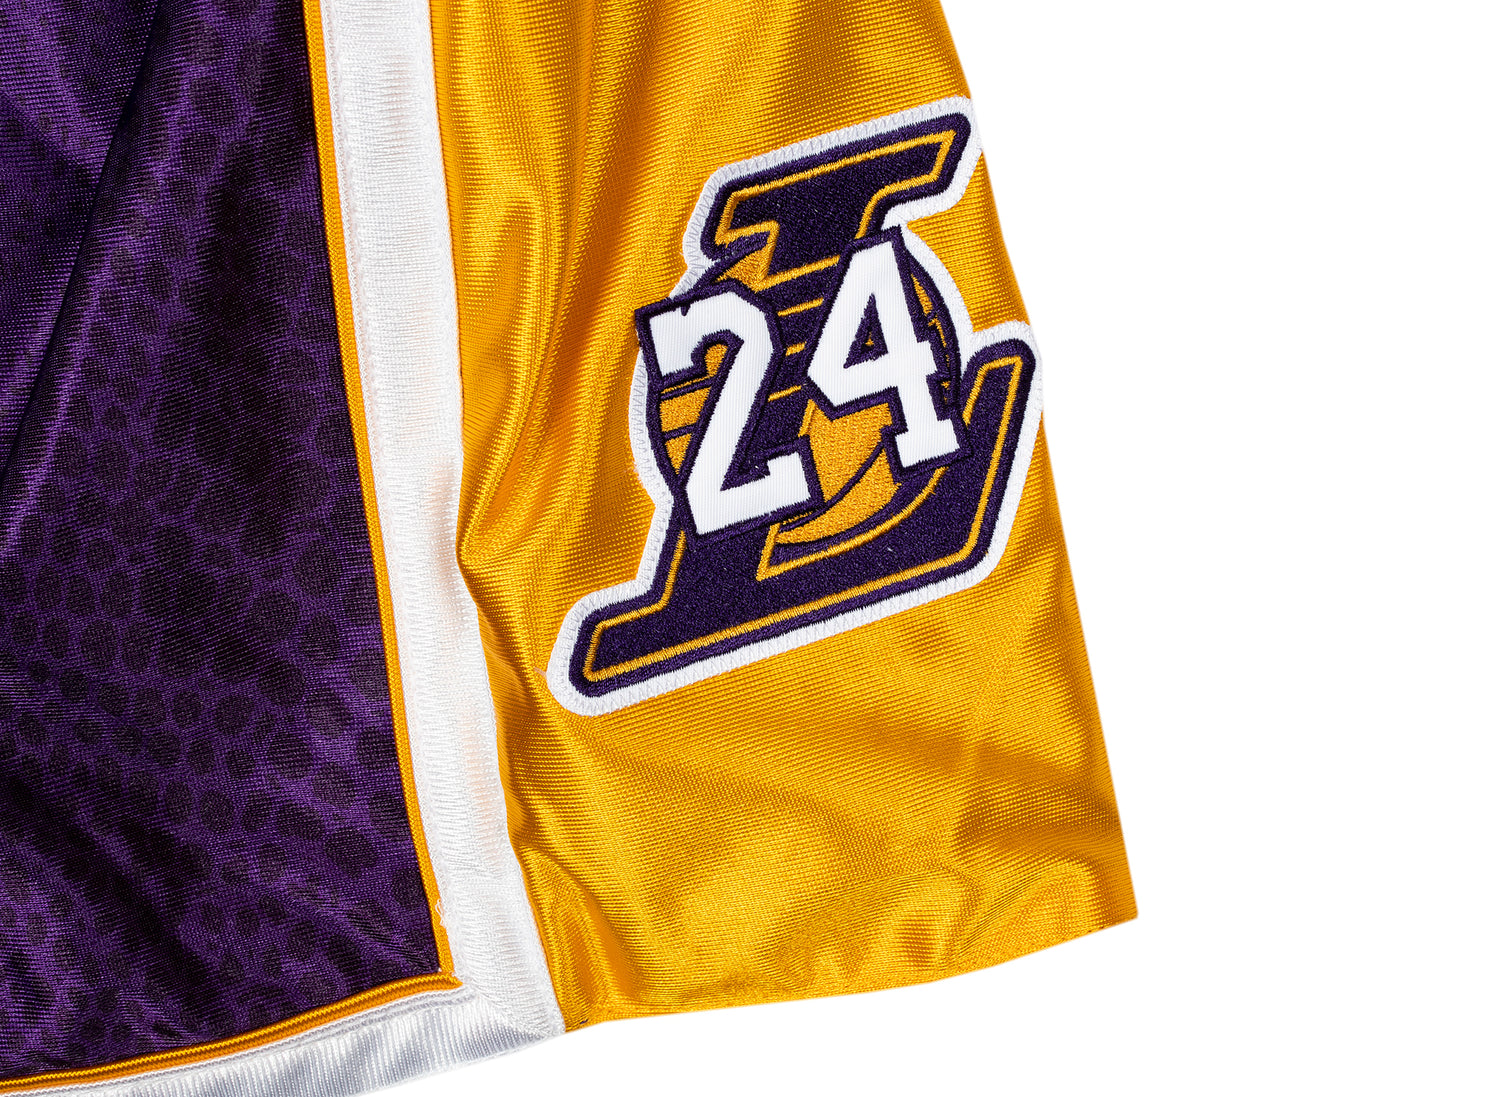 NBA Mitchell & Ness Reversible Kobe Bryant Lakers Shorts XL